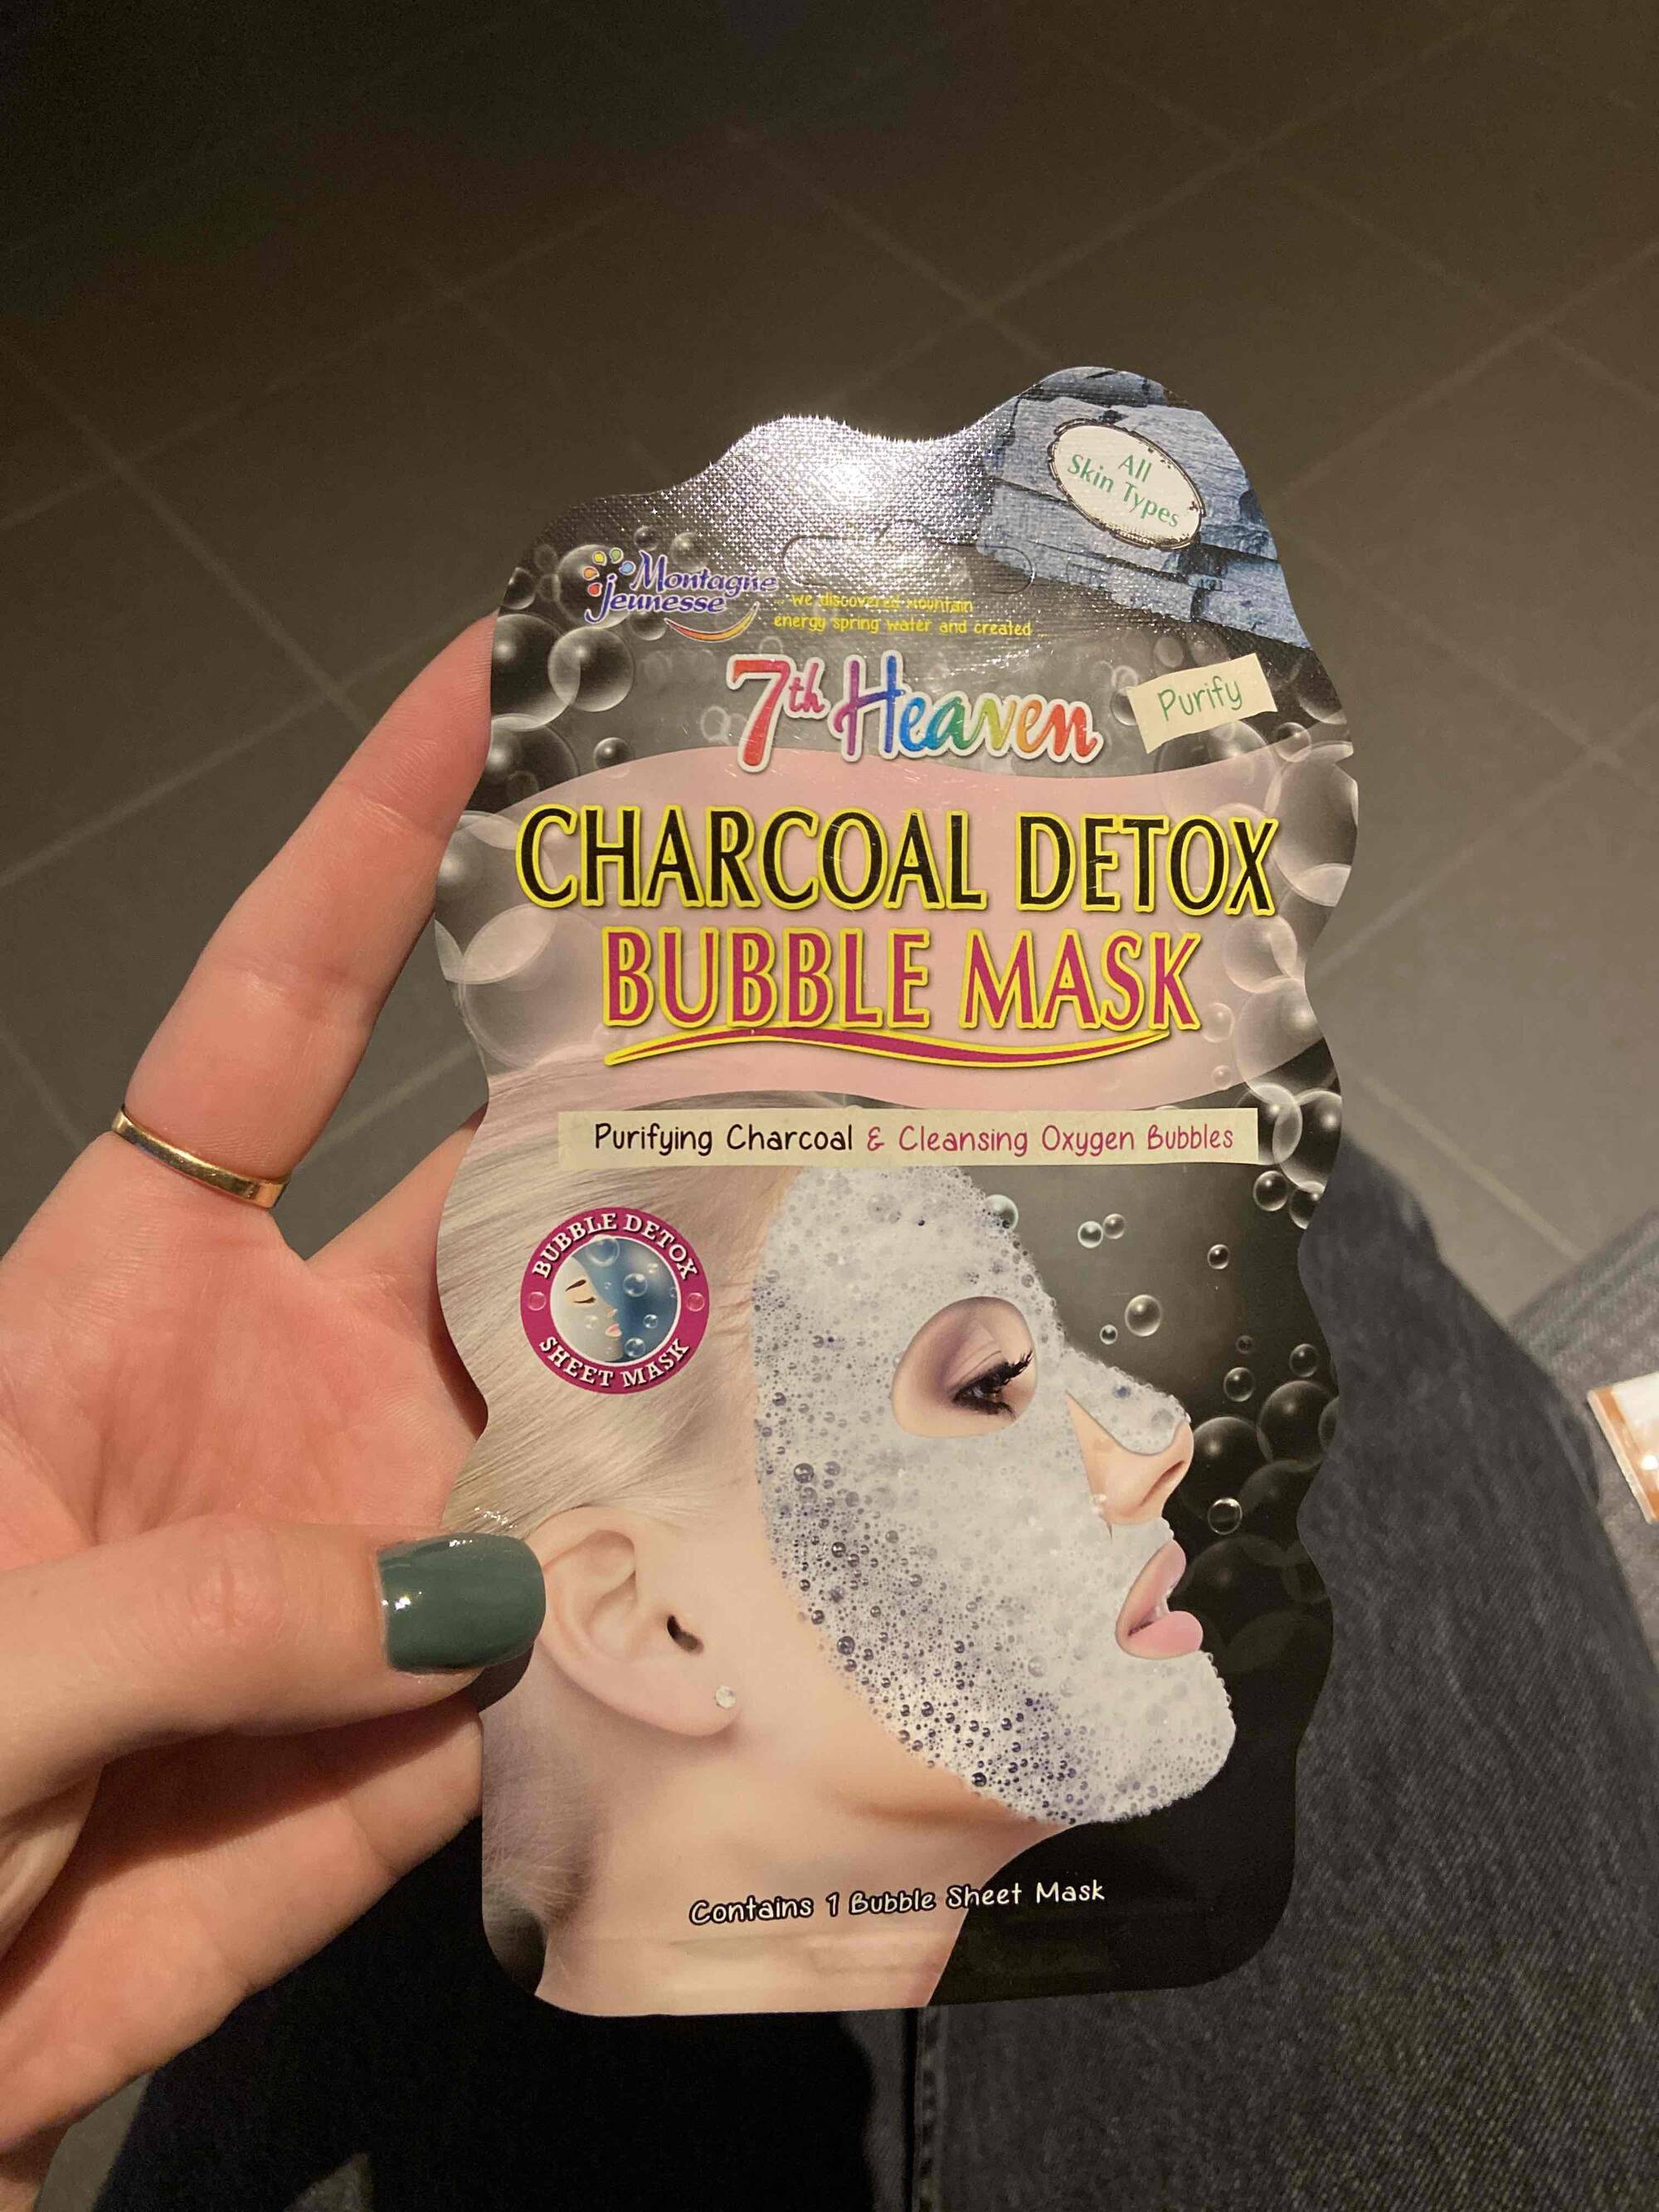 7TH HEAVEN - Charcoal detox bubble mask